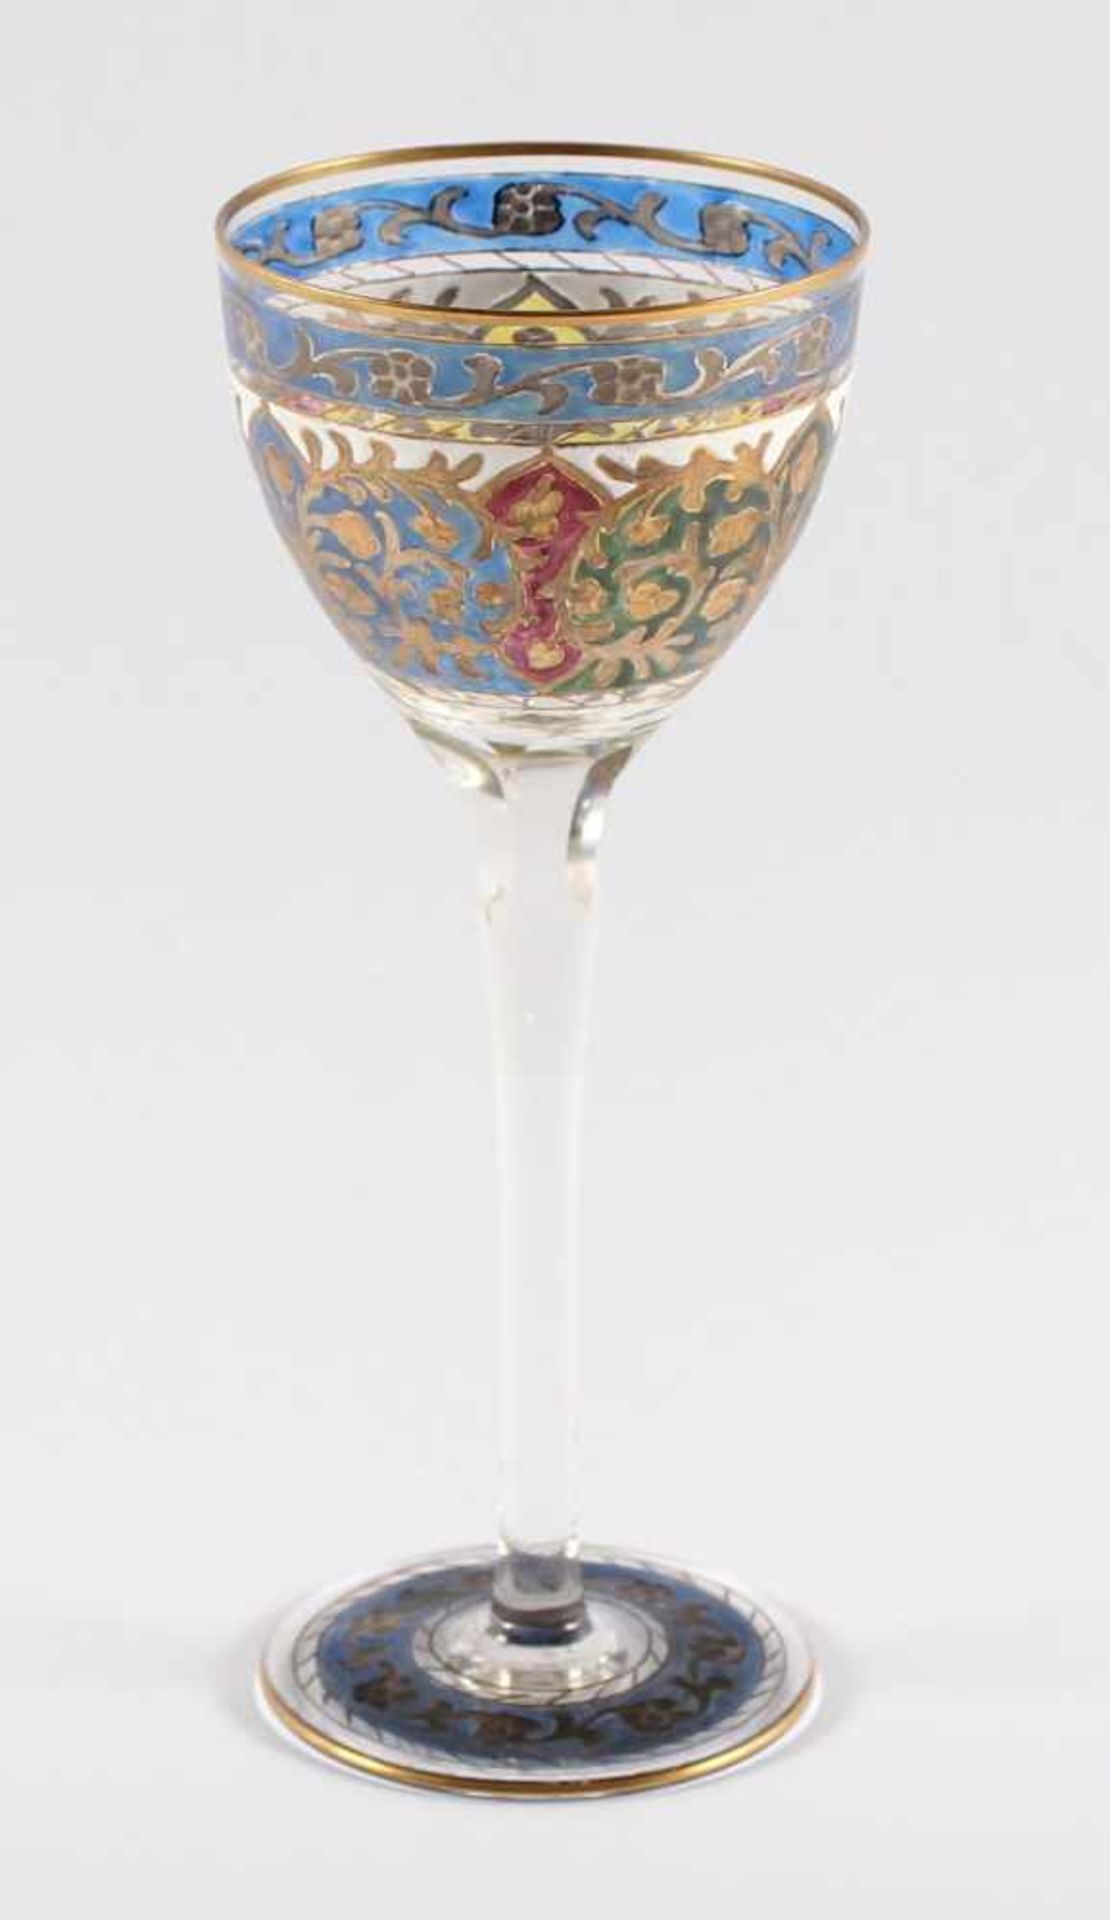 KELCHGLAS "JODHPUR", farbloses Glas, graviert, ornamentaler Dekor in polychromer Email- und